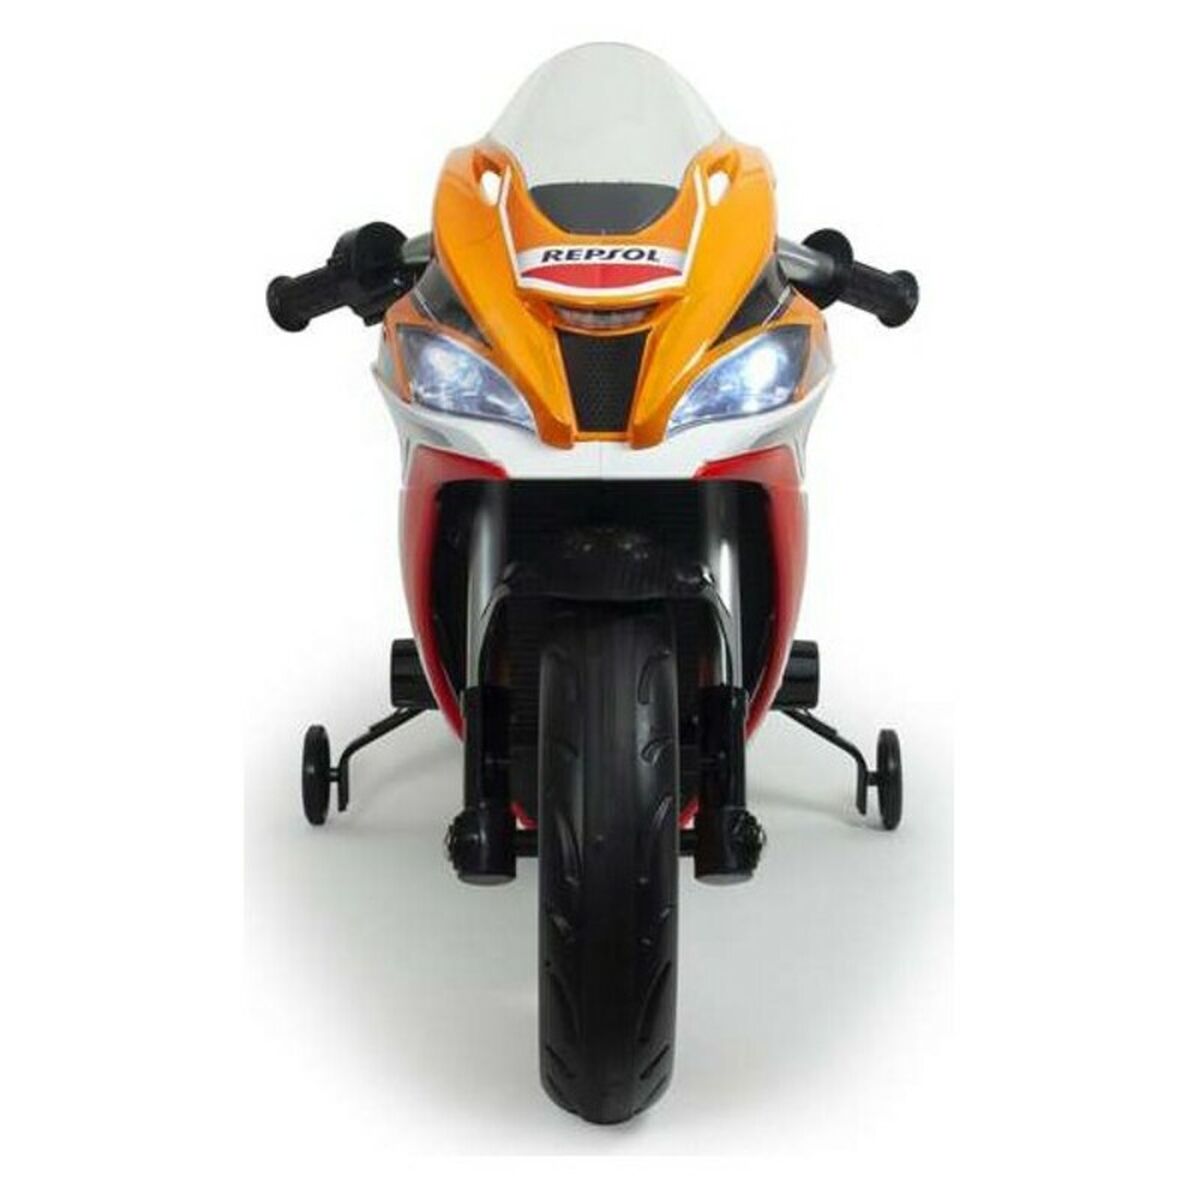 Motorcykel Injusa Honda Repsol 12V (62 x 113 x 52 cm)-Leksaker och spel, Sport och utomhus-Injusa-peaceofhome.se